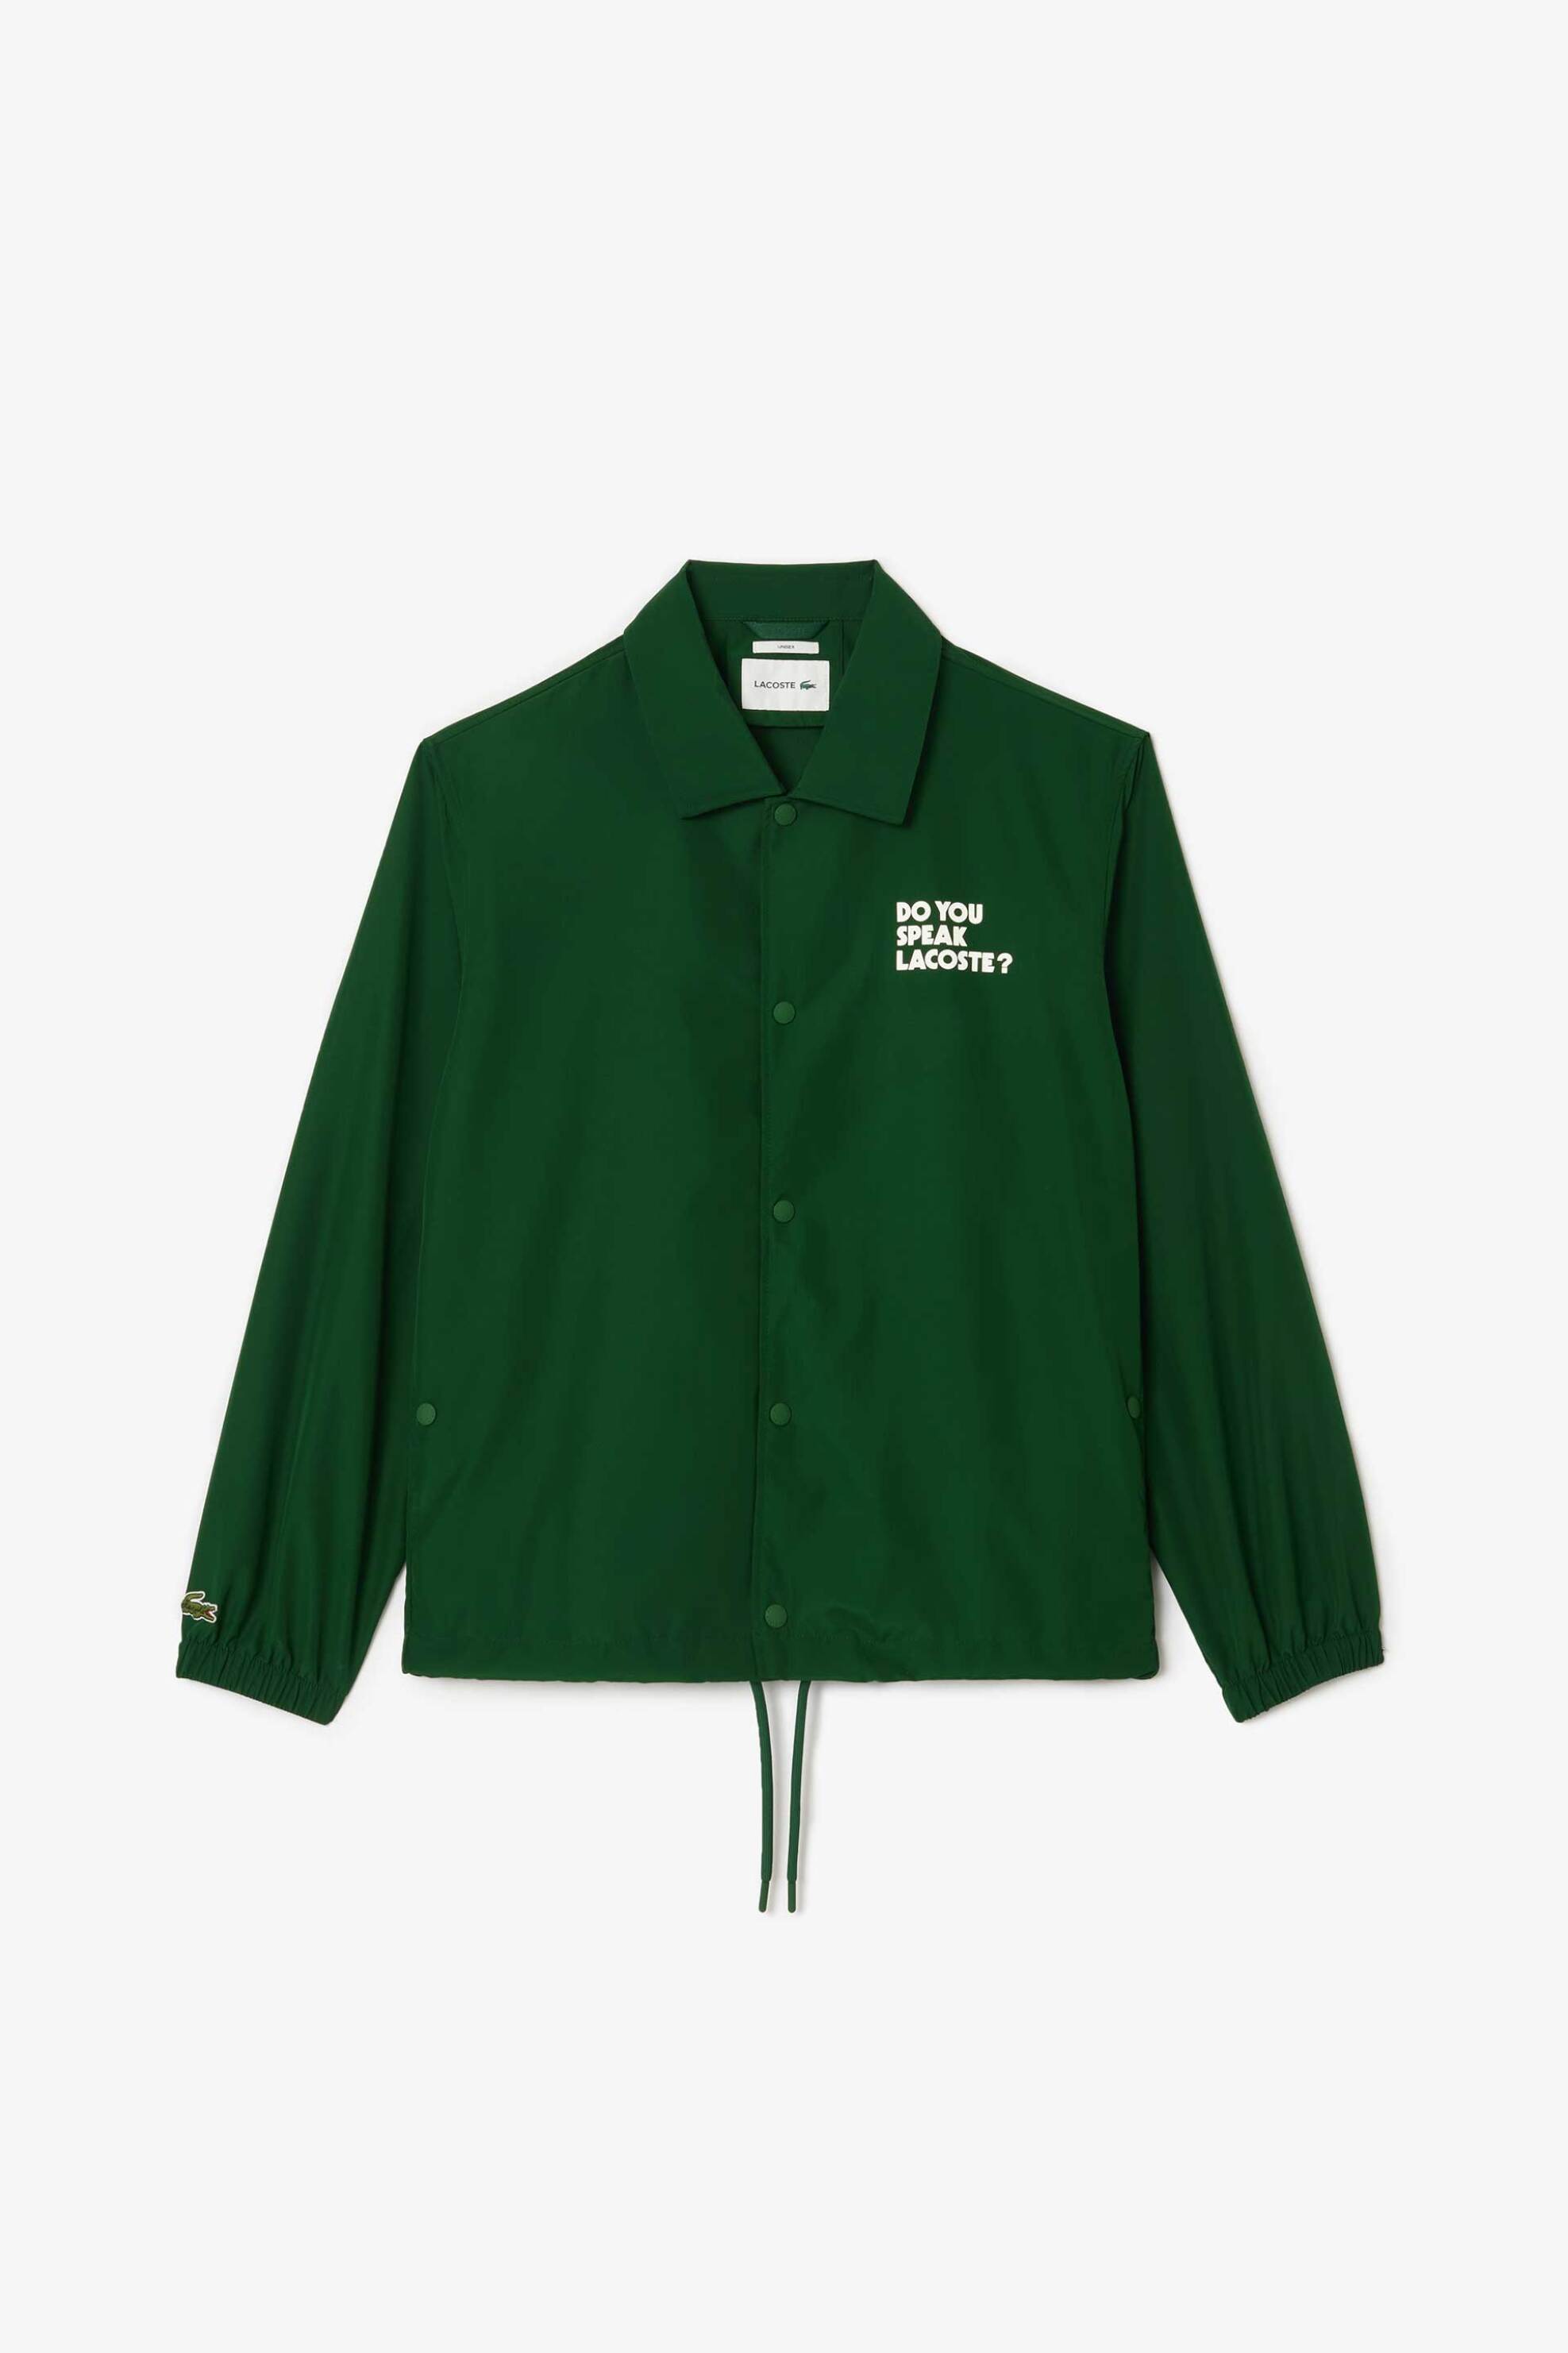 Ανδρική Μόδα > Ανδρικά Ρούχα > Ανδρικά Μπουφάν & Παλτό > Ανδρικά Μπουφάν Lacoste ανδρικό jacket μονόχρωμο με contrast letterings και ελαστικά τελειώματα - BH0123 Πράσινο Σμαραγδί